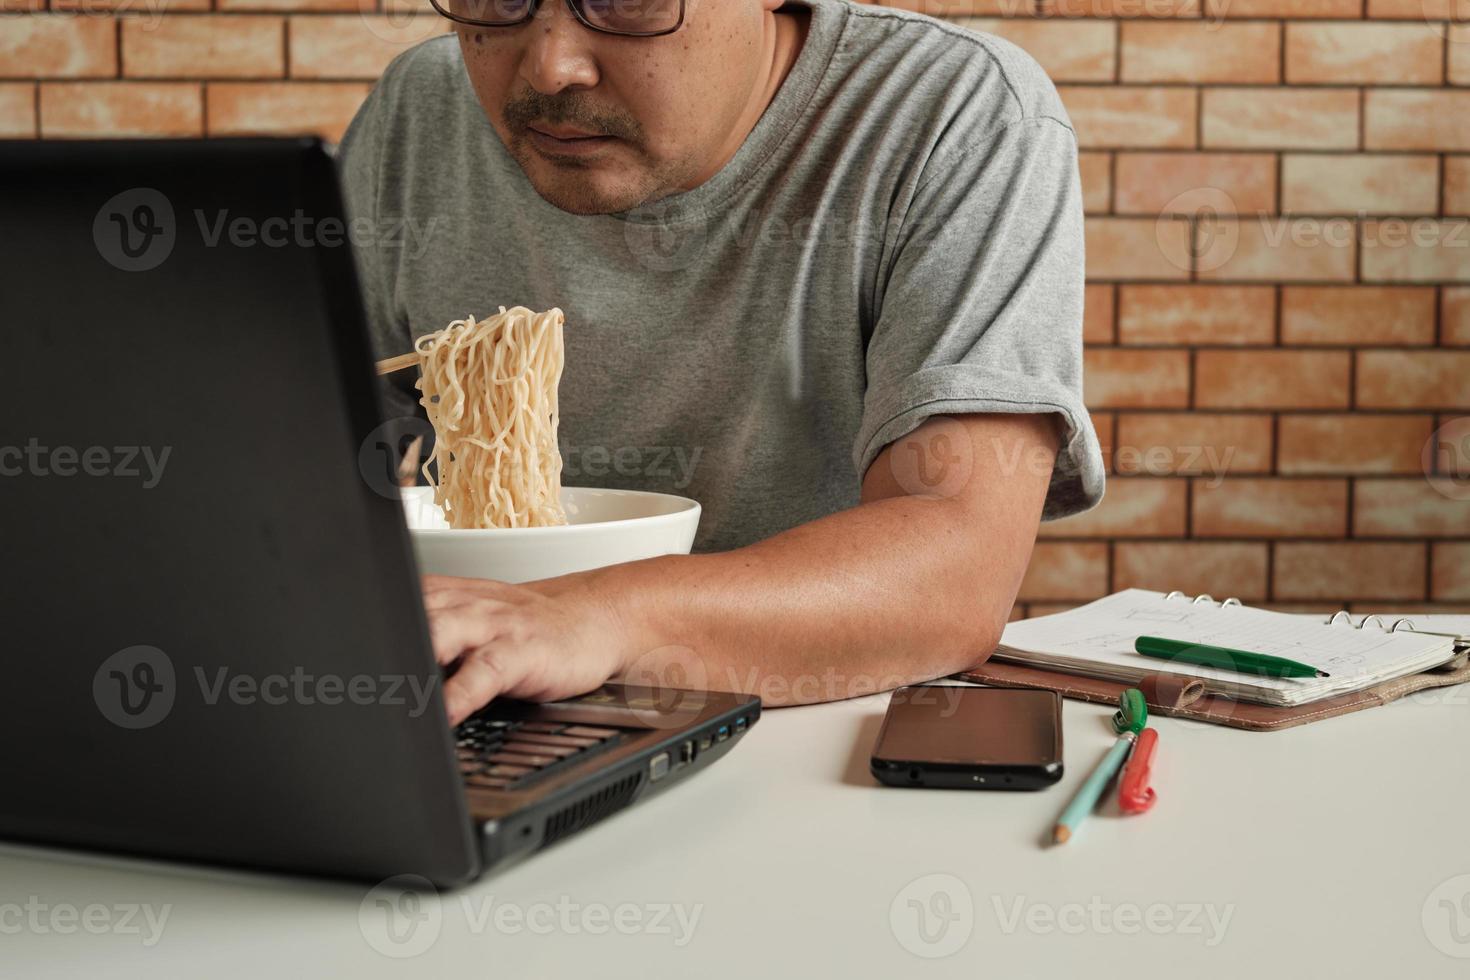 thailändsk manlig arbetare upptagen med att arbeta med bärbar dator, använd ätpinnar för att hastigt äta snabbnudlar under kontorslunchpaus, eftersom det är snabbt, gott och billigt. med tiden asiatisk snabbmat, ohälsosam livsstil. foto